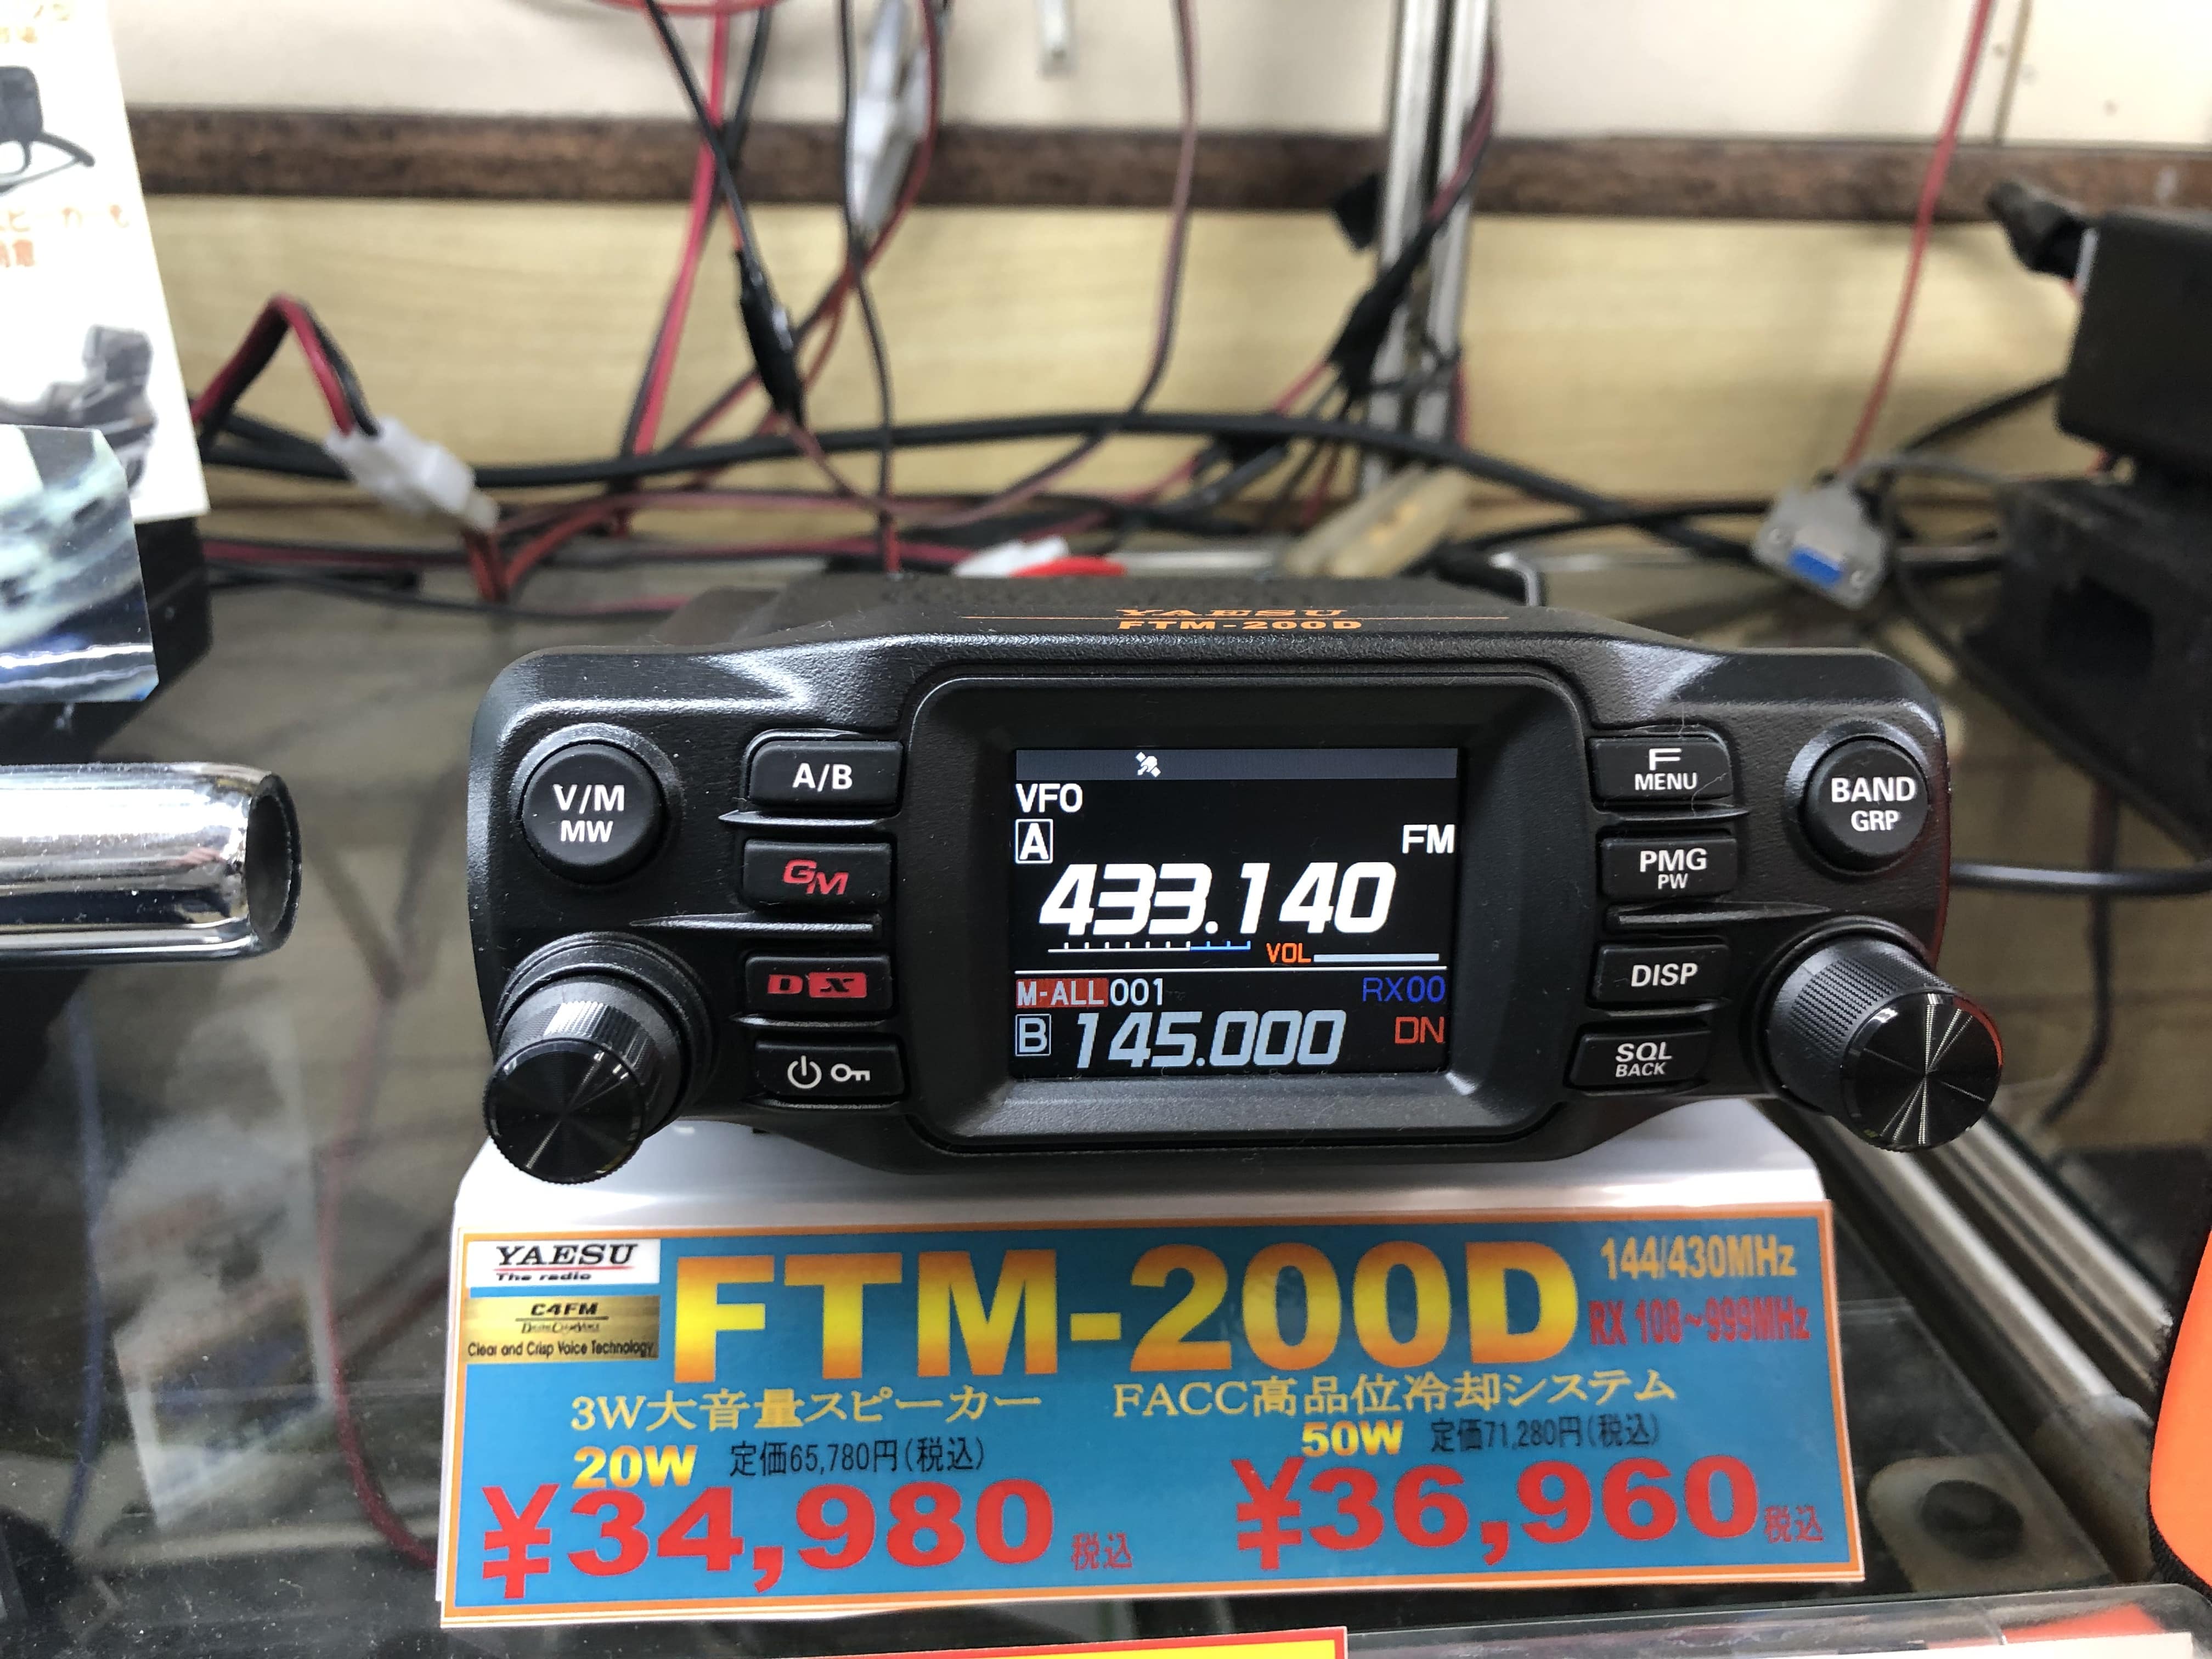 FTM-200DS （20Ｗタイプ） C4FM/FM 144/430MHz デュアルバンドデジタルトランシーバー 